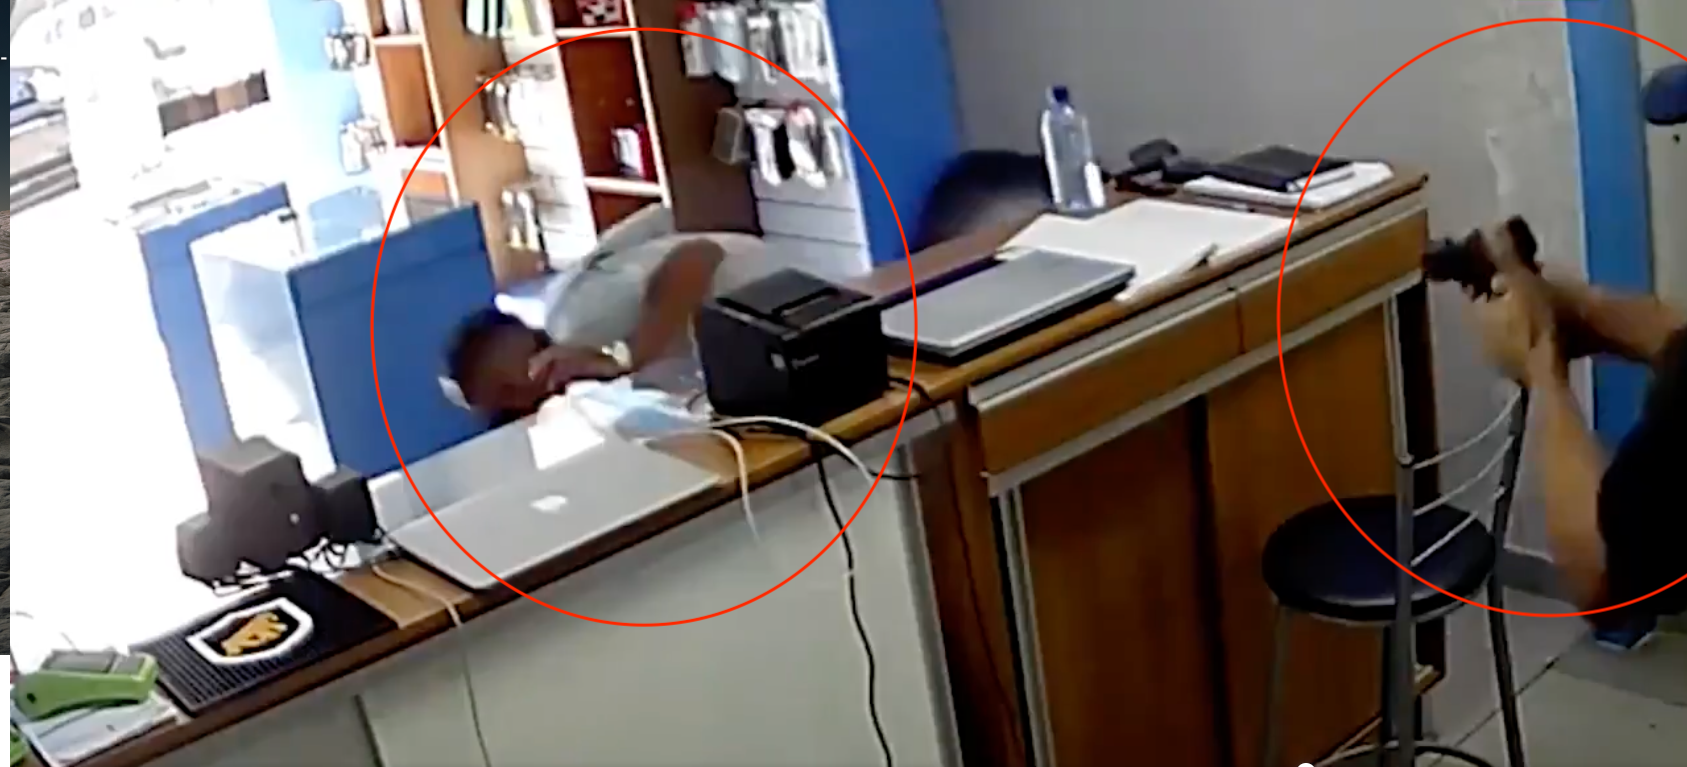 El incidente quedó registrado en la cámara de seguridad del negocio. (Foto captura de pantalla video g1.globo.com).